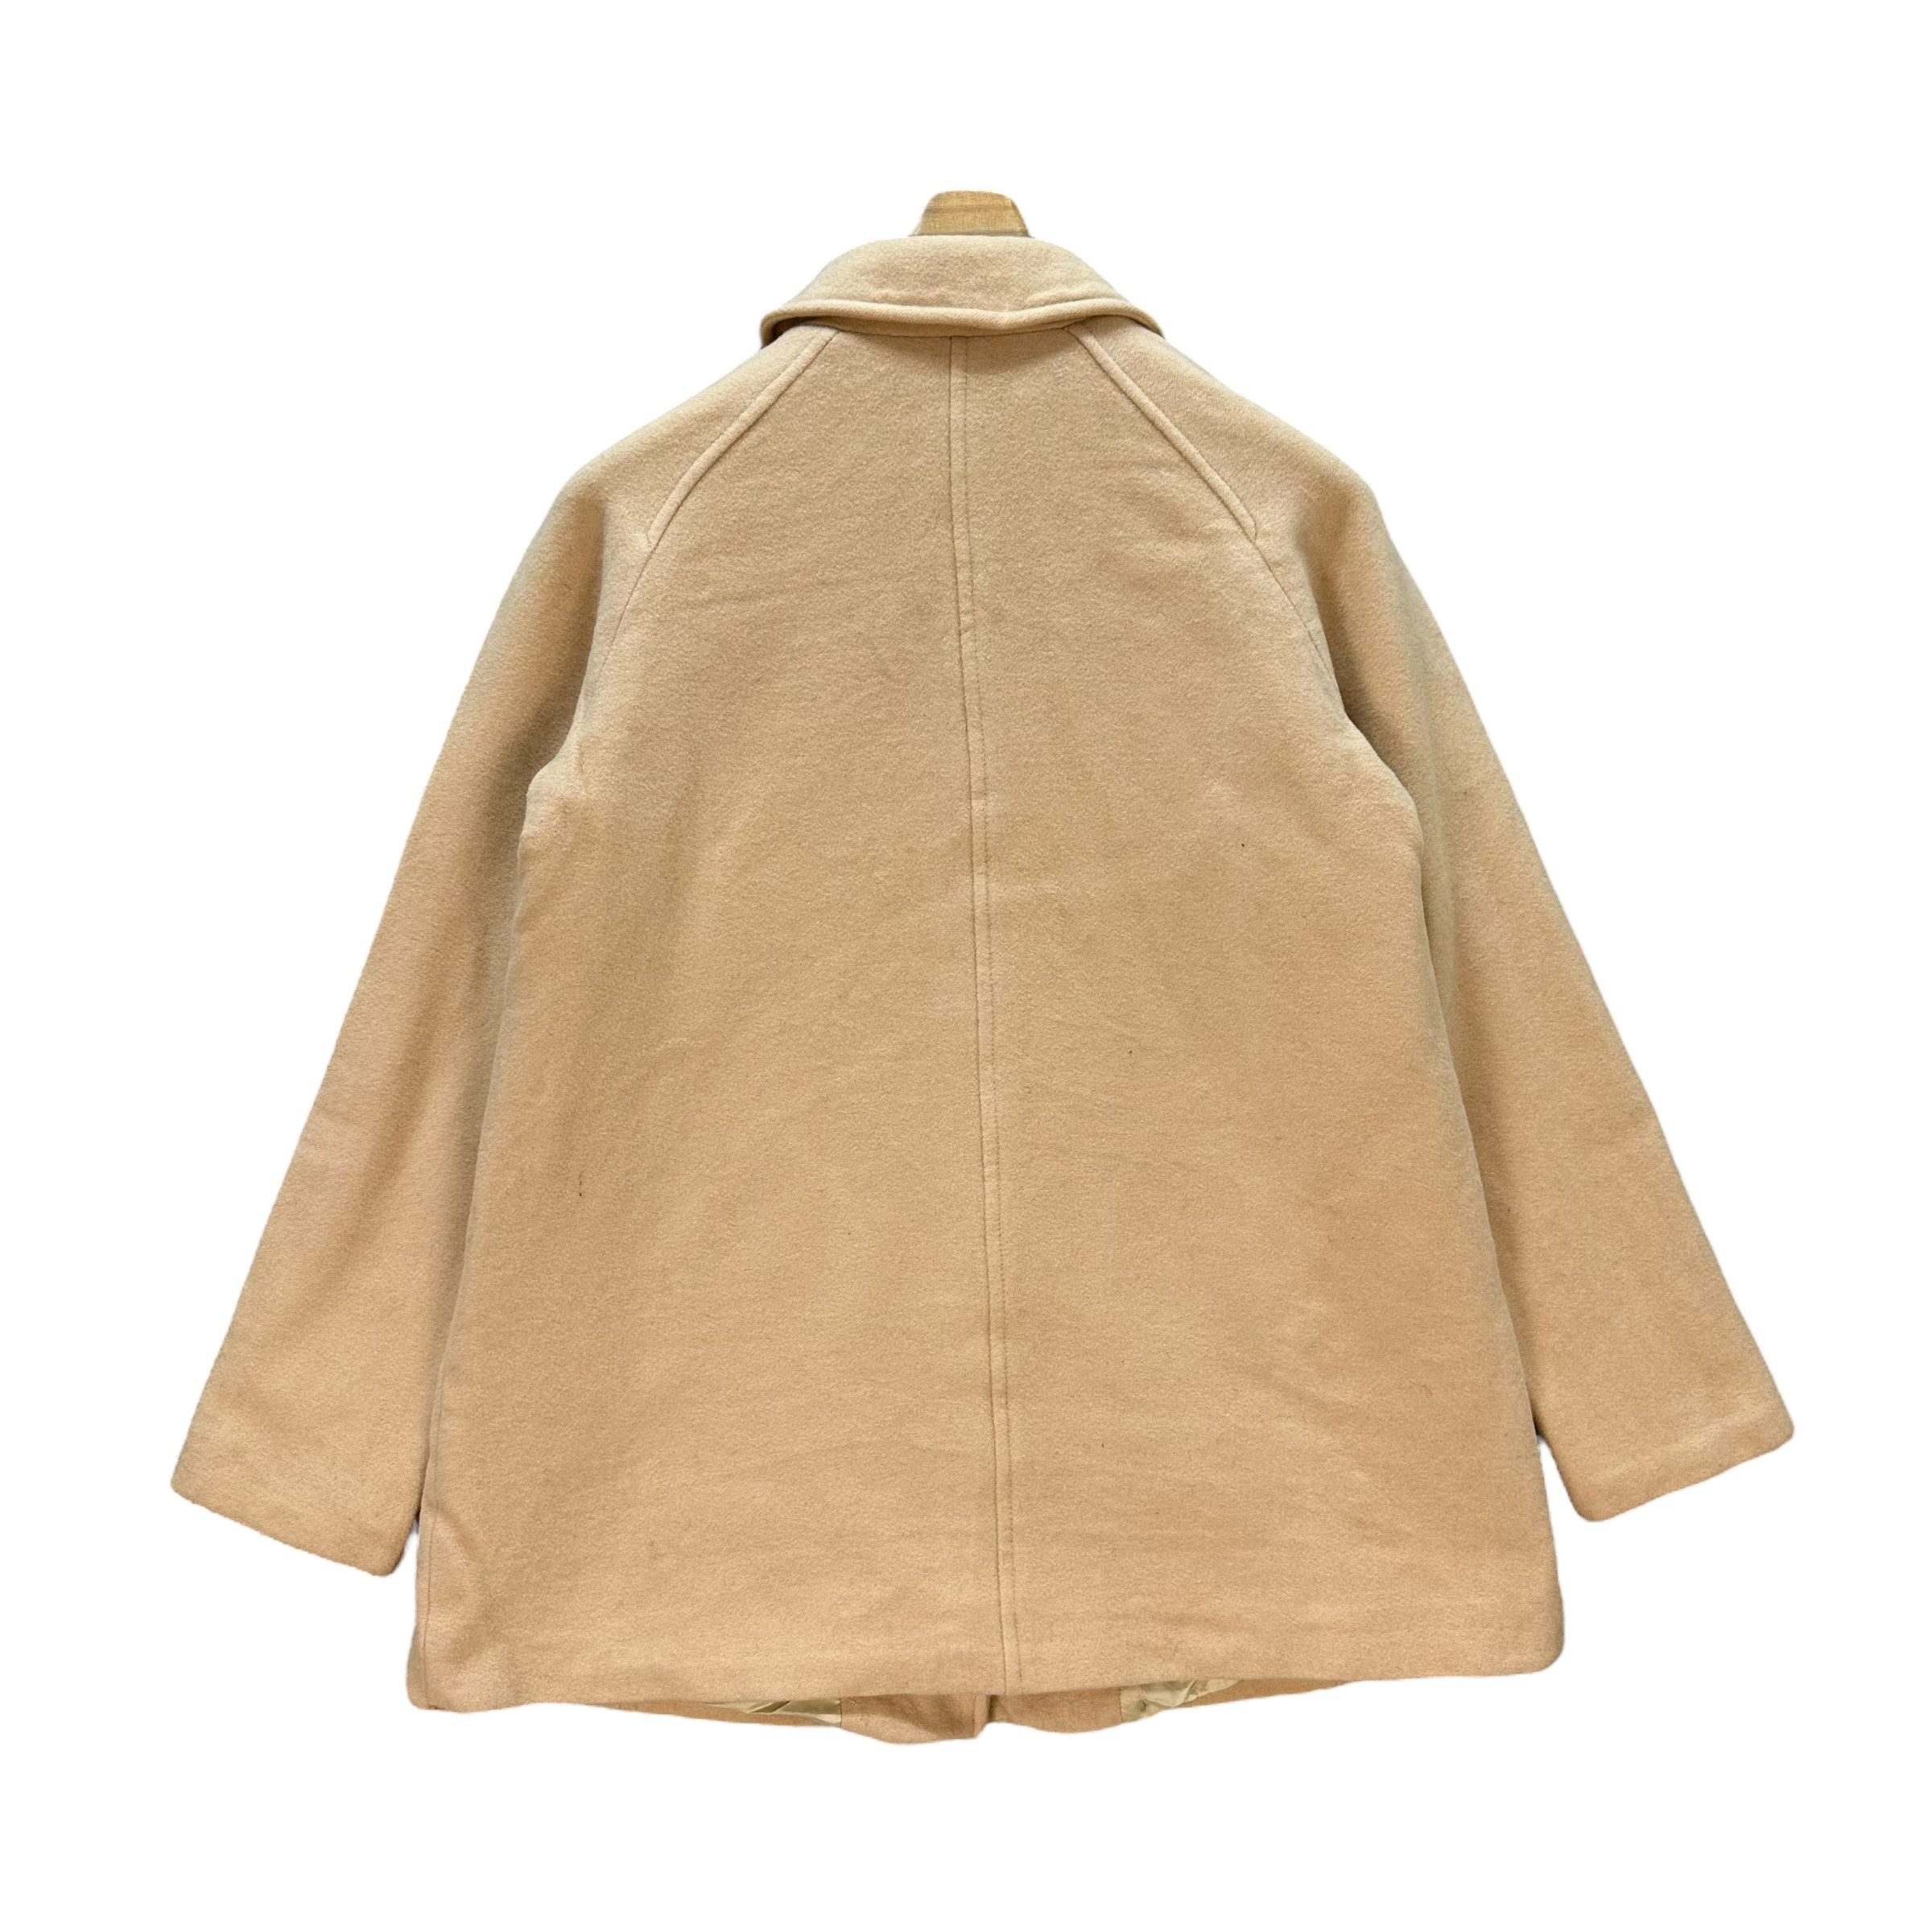 Vintage - Sonia Rykiel Wool Blend Coat Jacket #9117-58 - 12